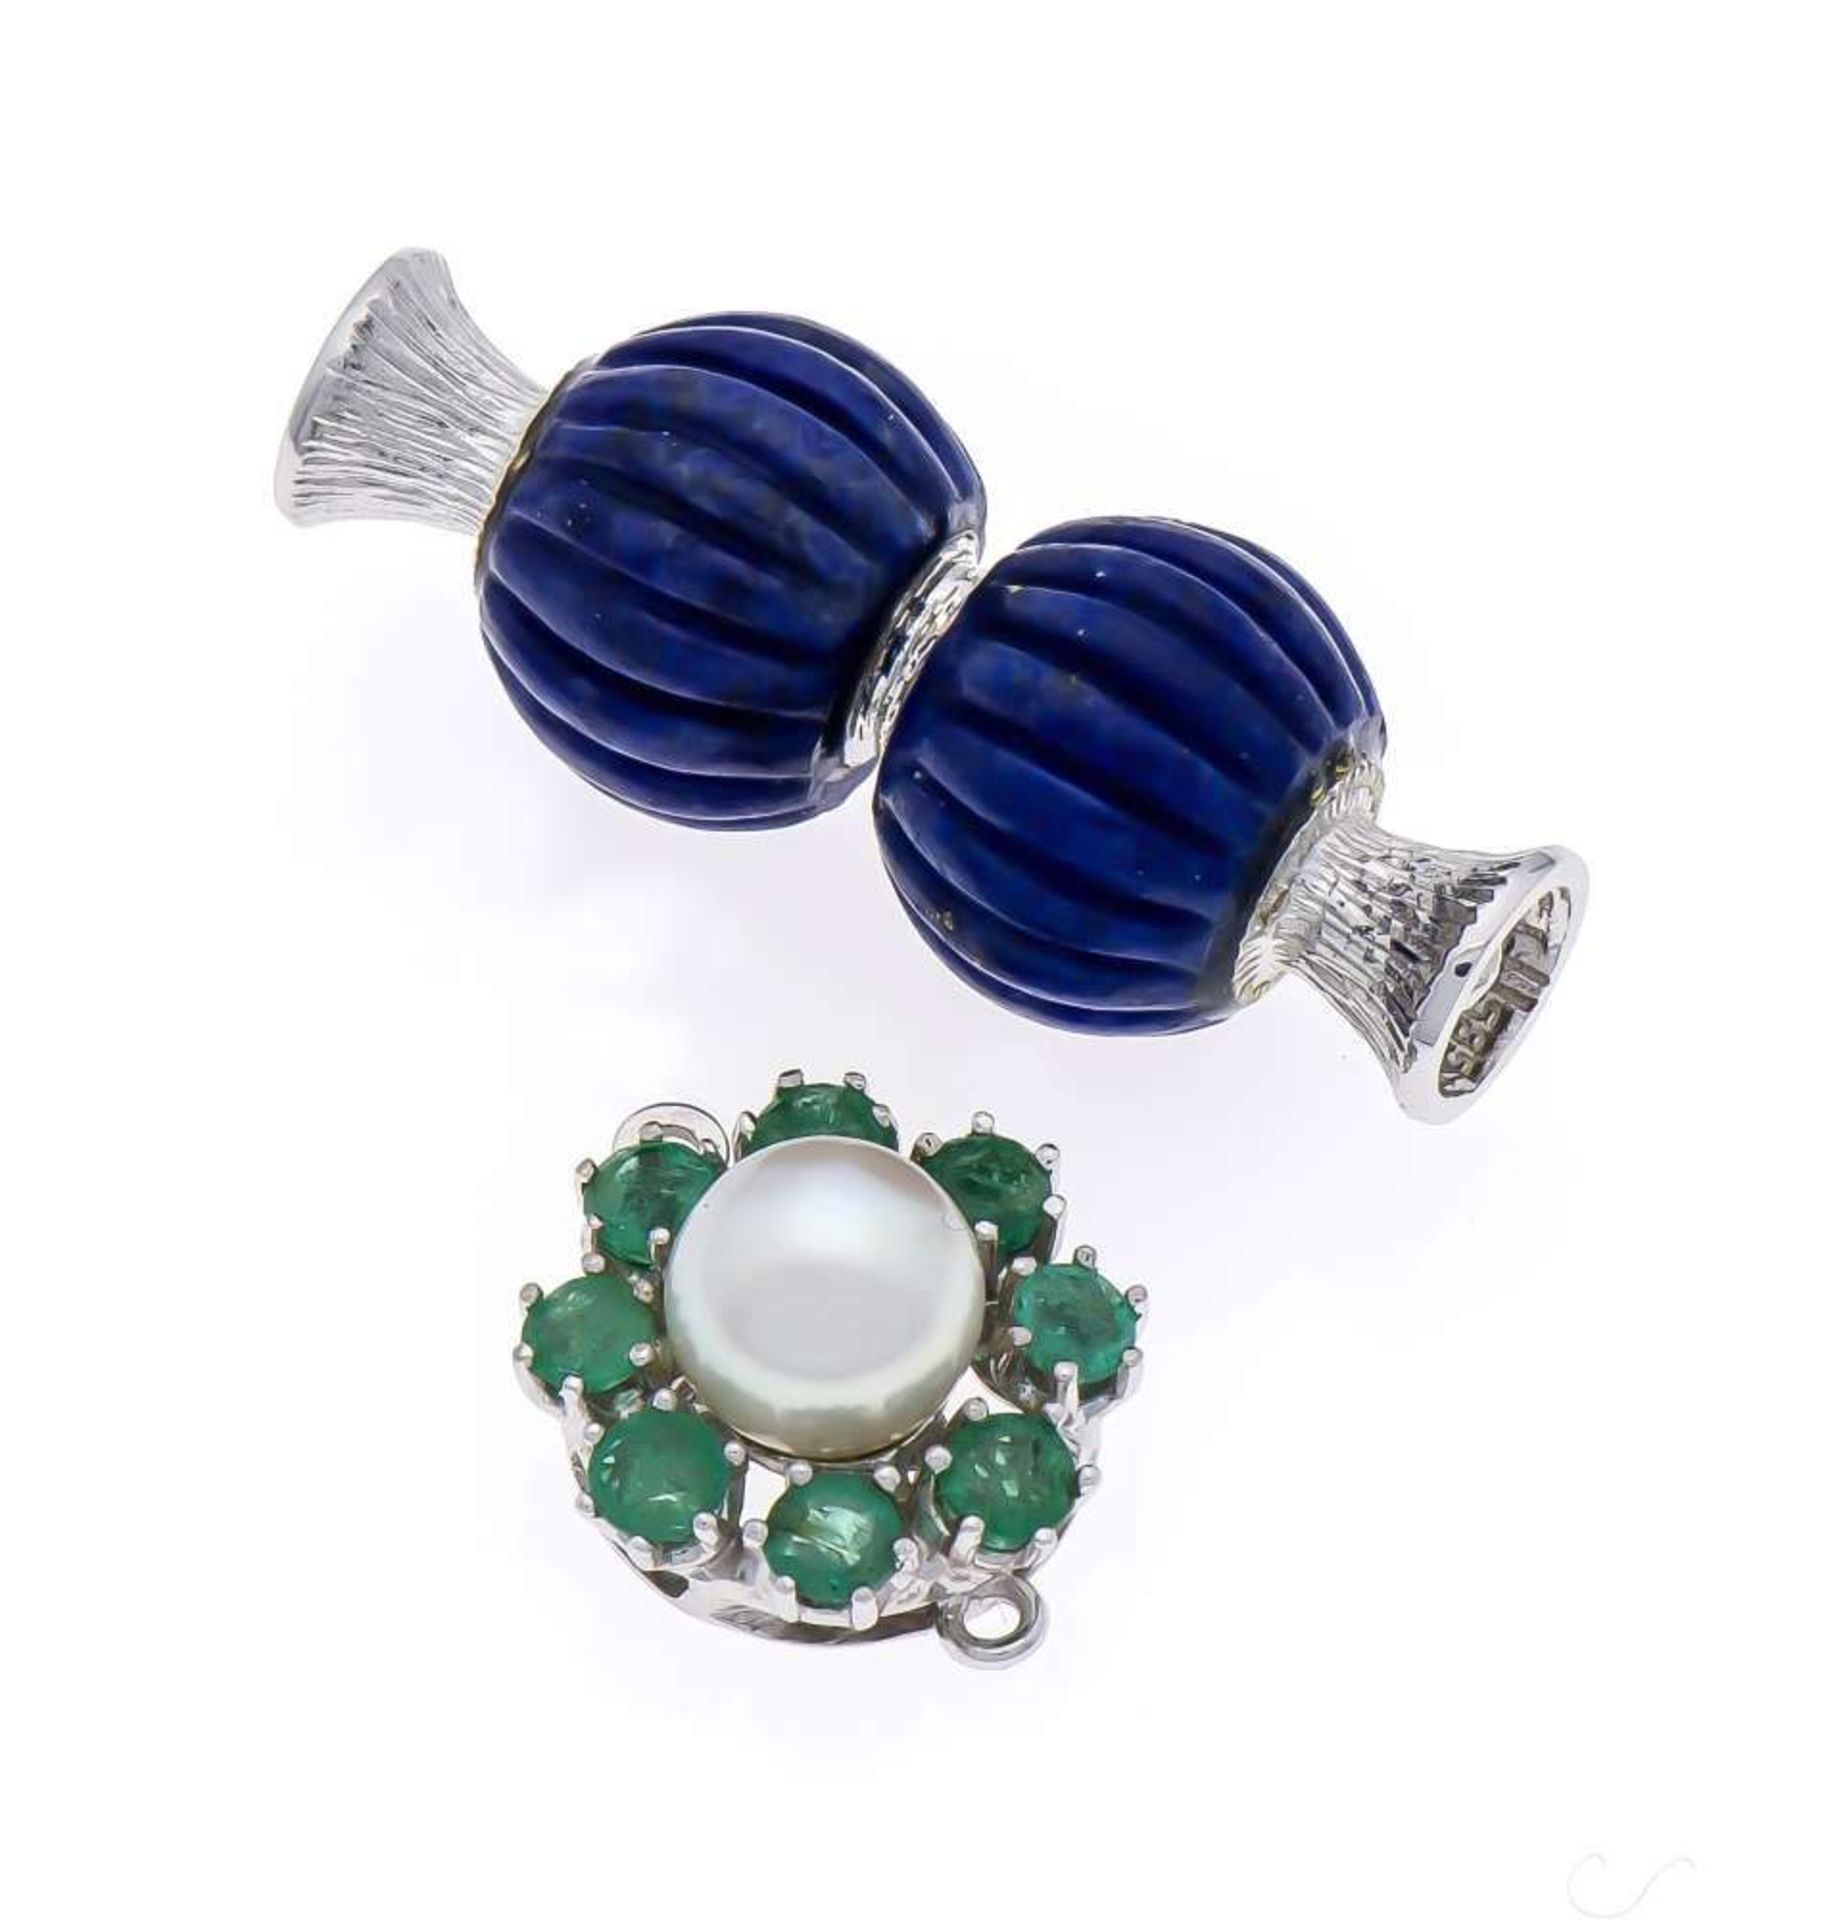 Perlenketten-Schließen WG 585/000 1 x mit Akoyaperle 7 mm und 8 rund fac. Smaragden in sehr guter